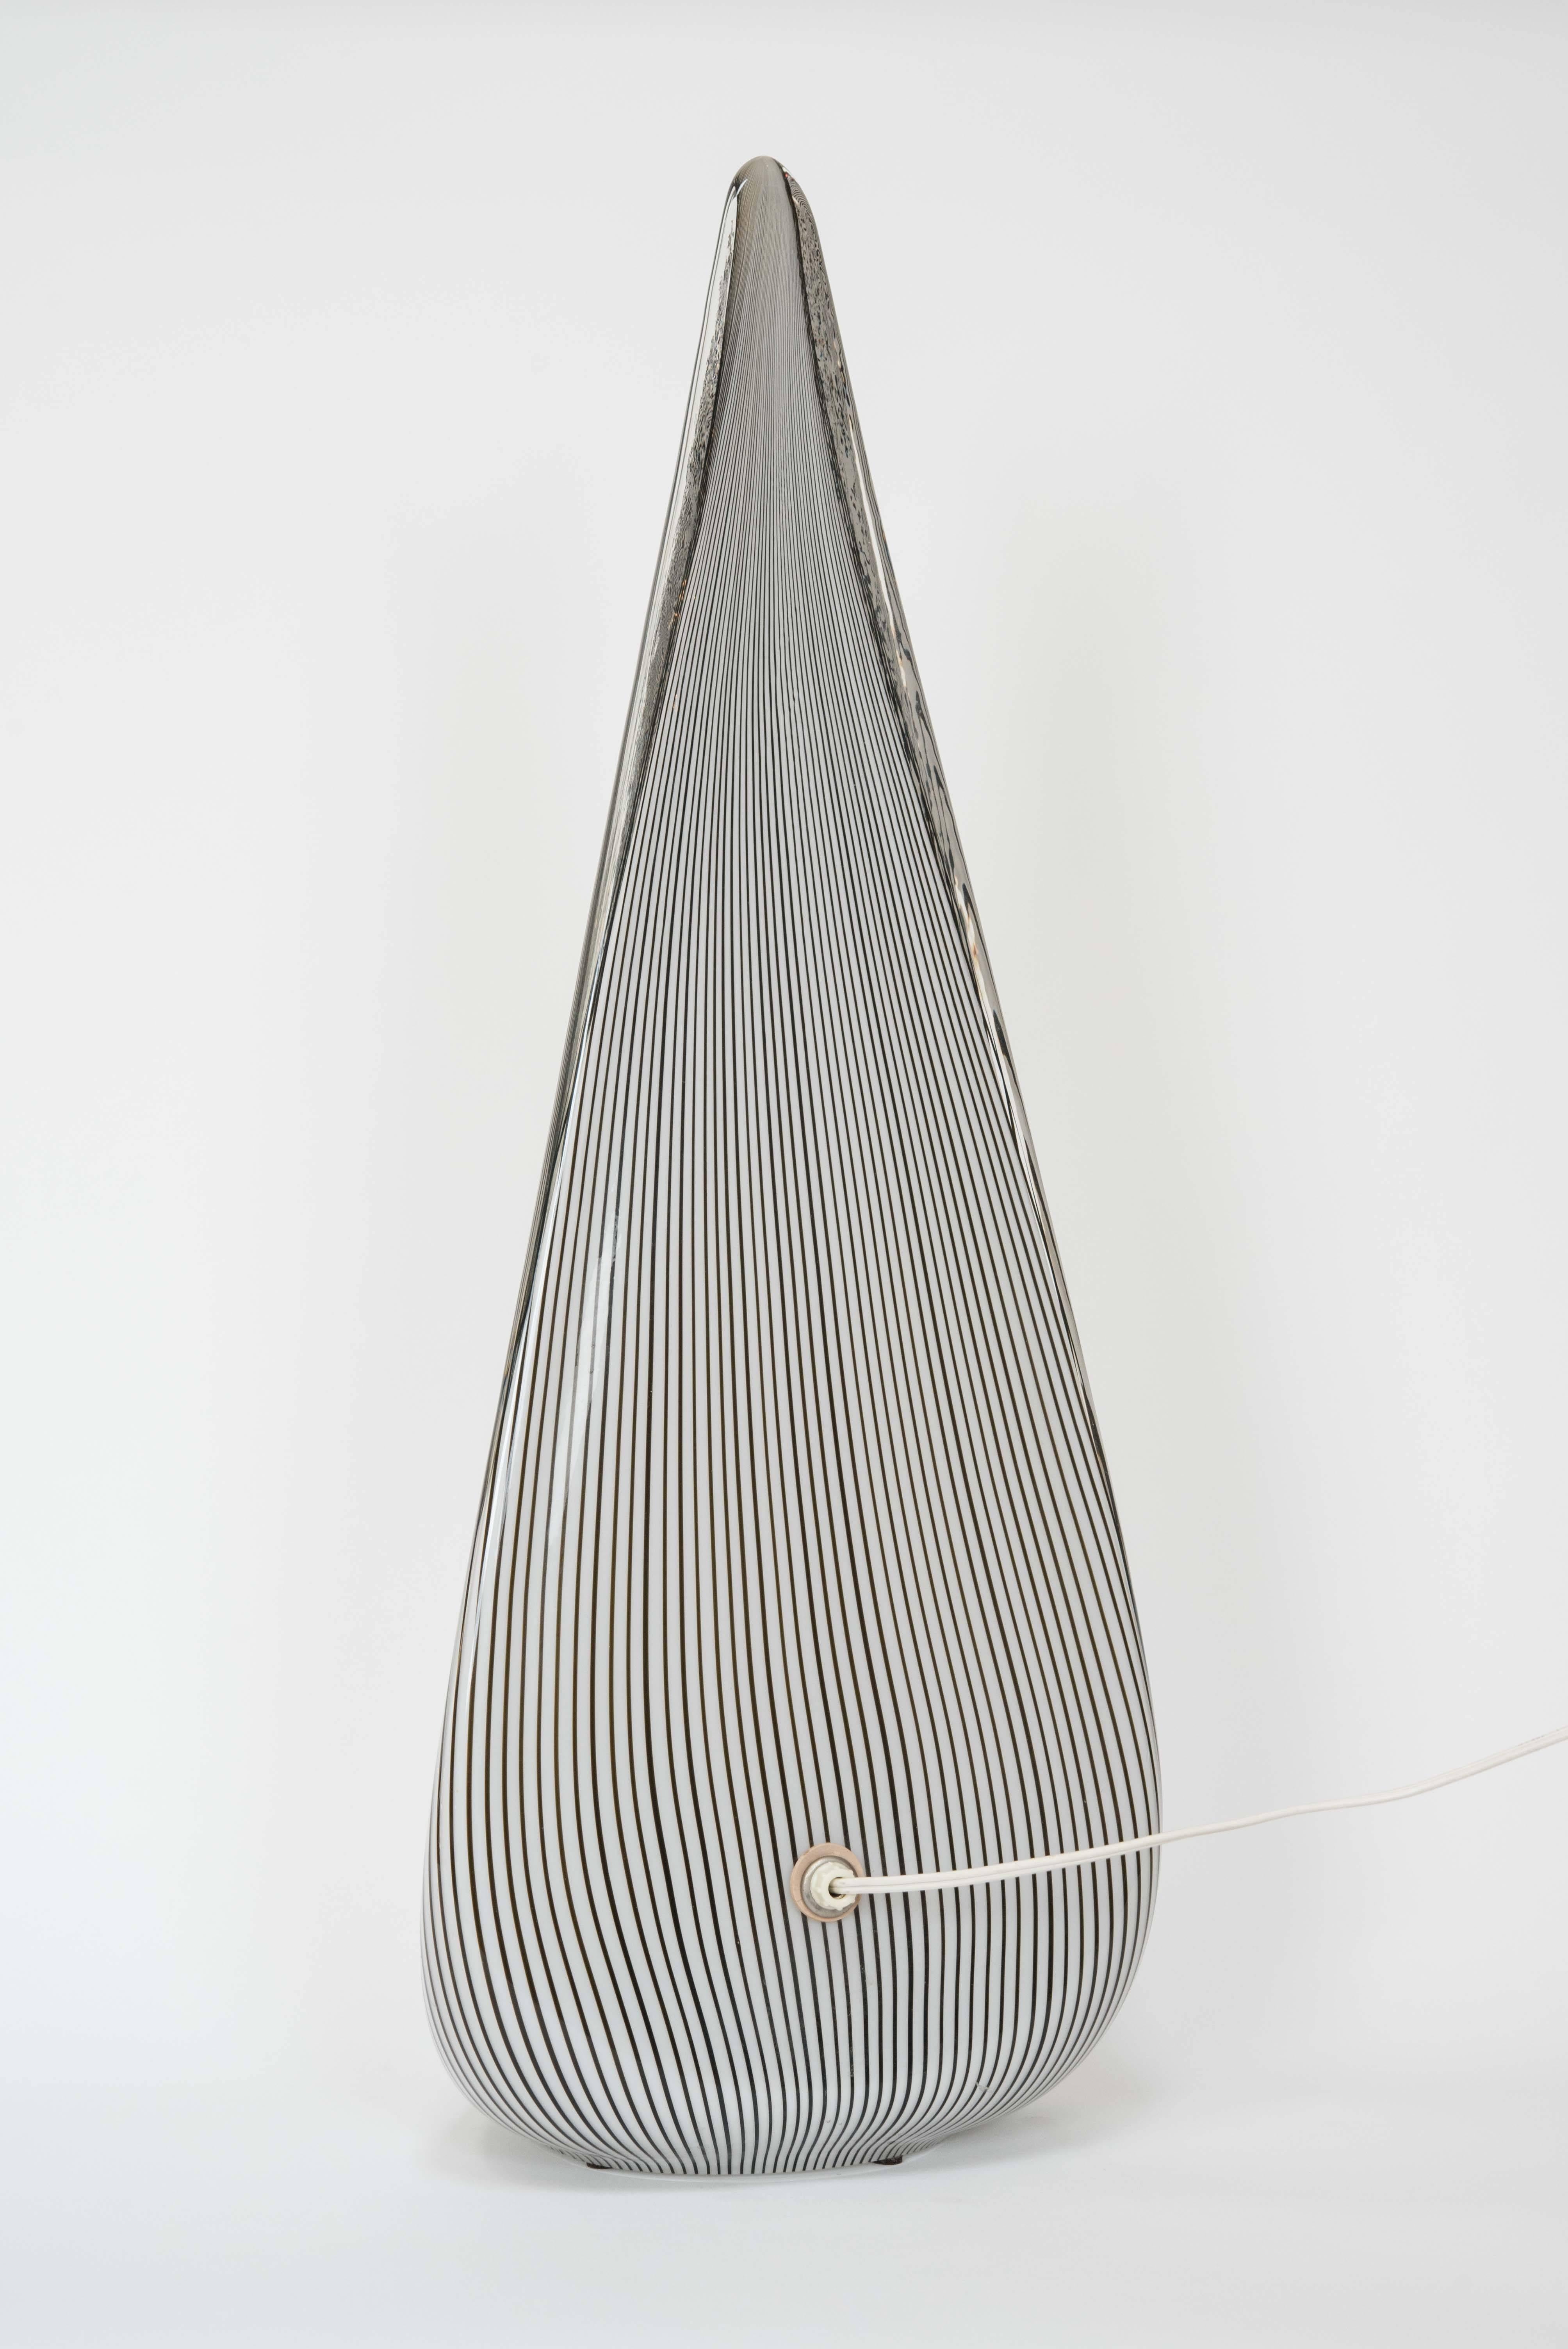 Italian Glass Pyramid Lamp by Lino Tagliapietra for Vetri Murano